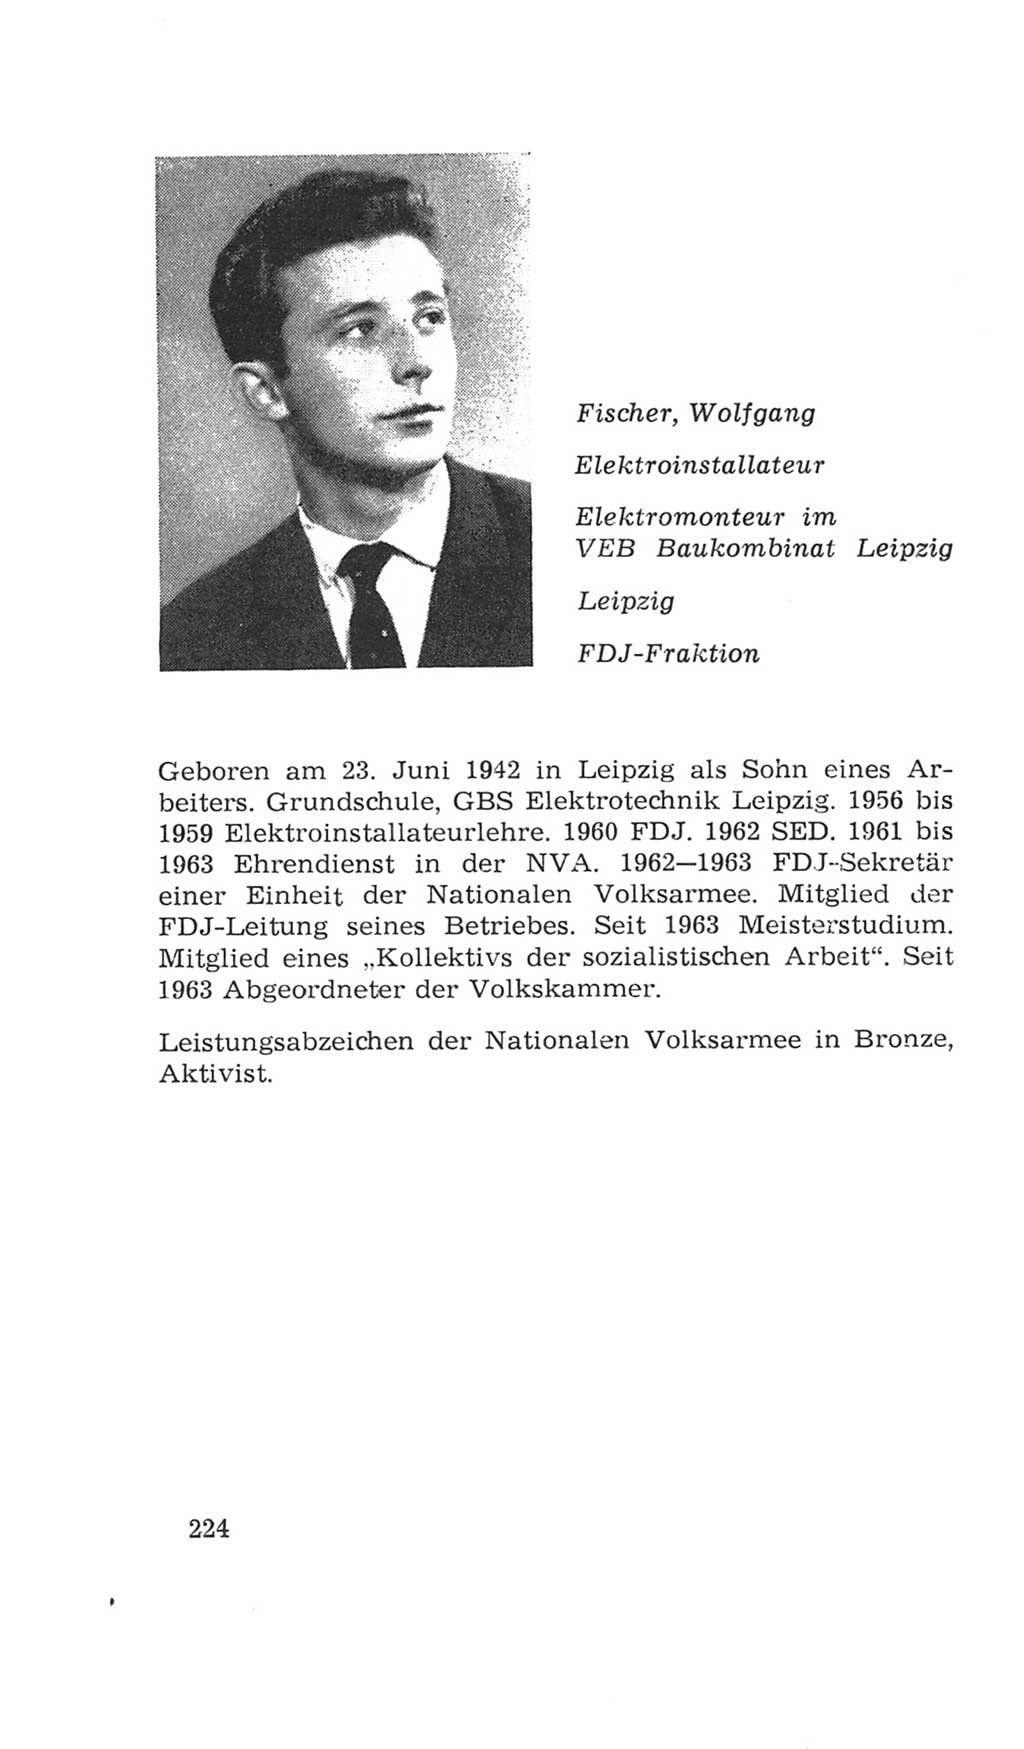 Volkskammer (VK) der Deutschen Demokratischen Republik (DDR), 4. Wahlperiode 1963-1967, Seite 224 (VK. DDR 4. WP. 1963-1967, S. 224)